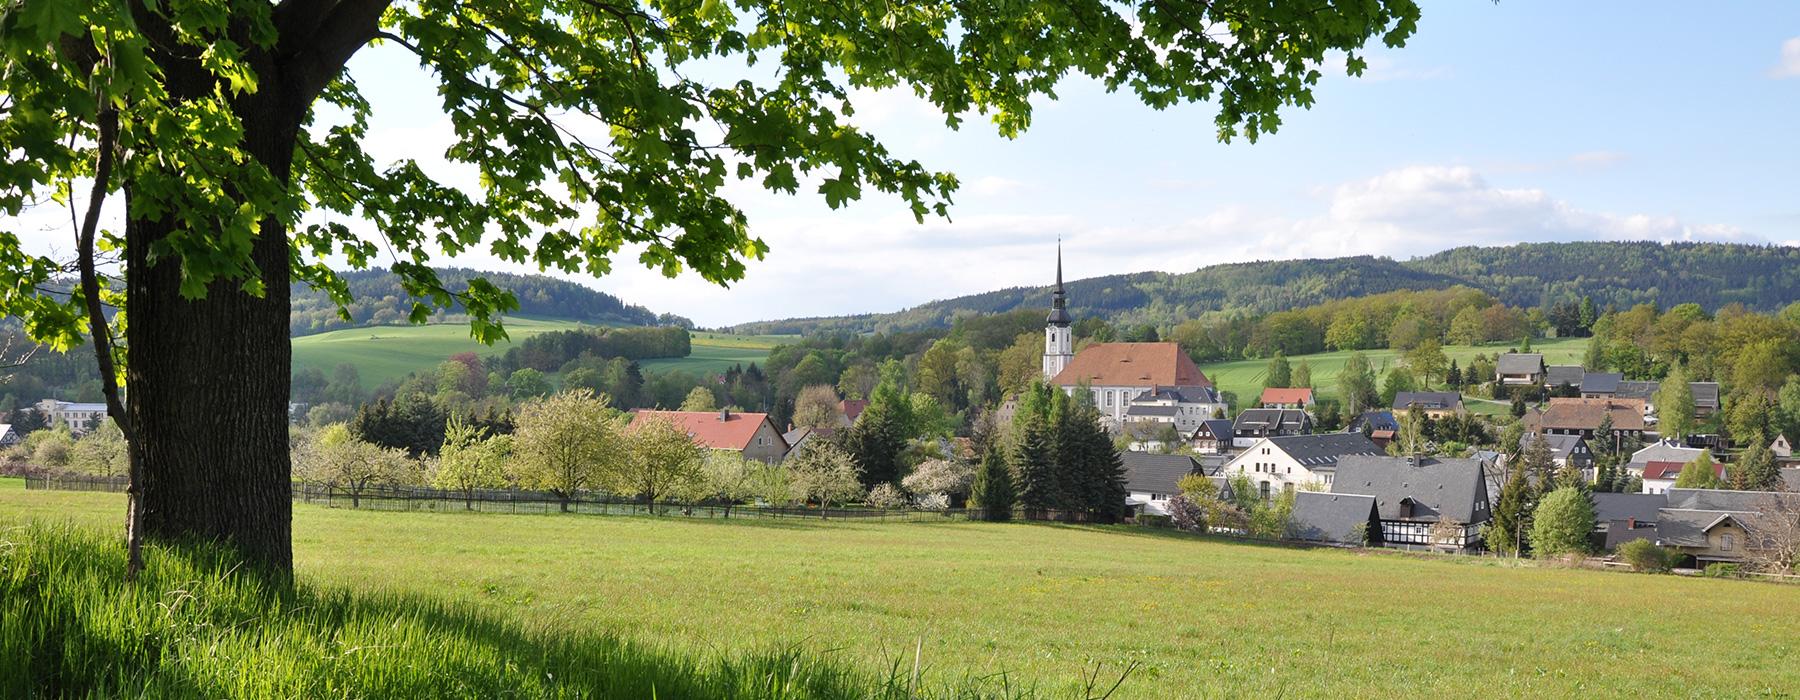 Cunewalde village